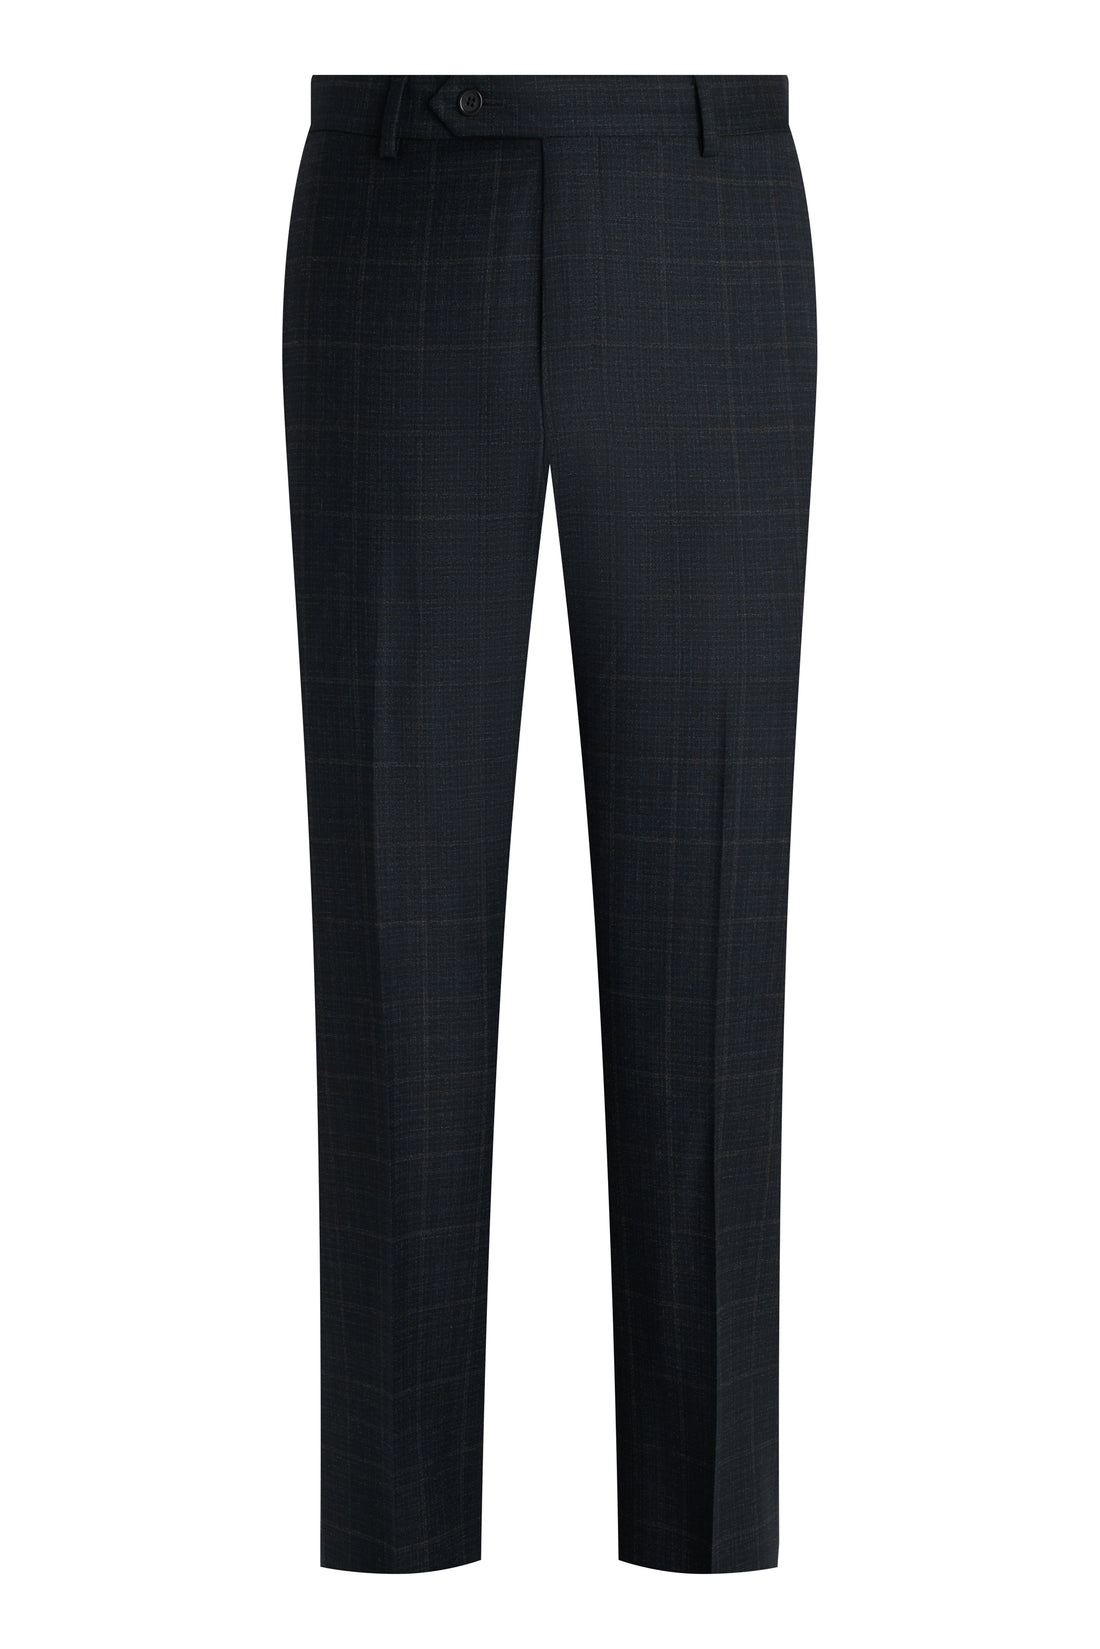 Charcoal Plaid Double Twist Suit front pant